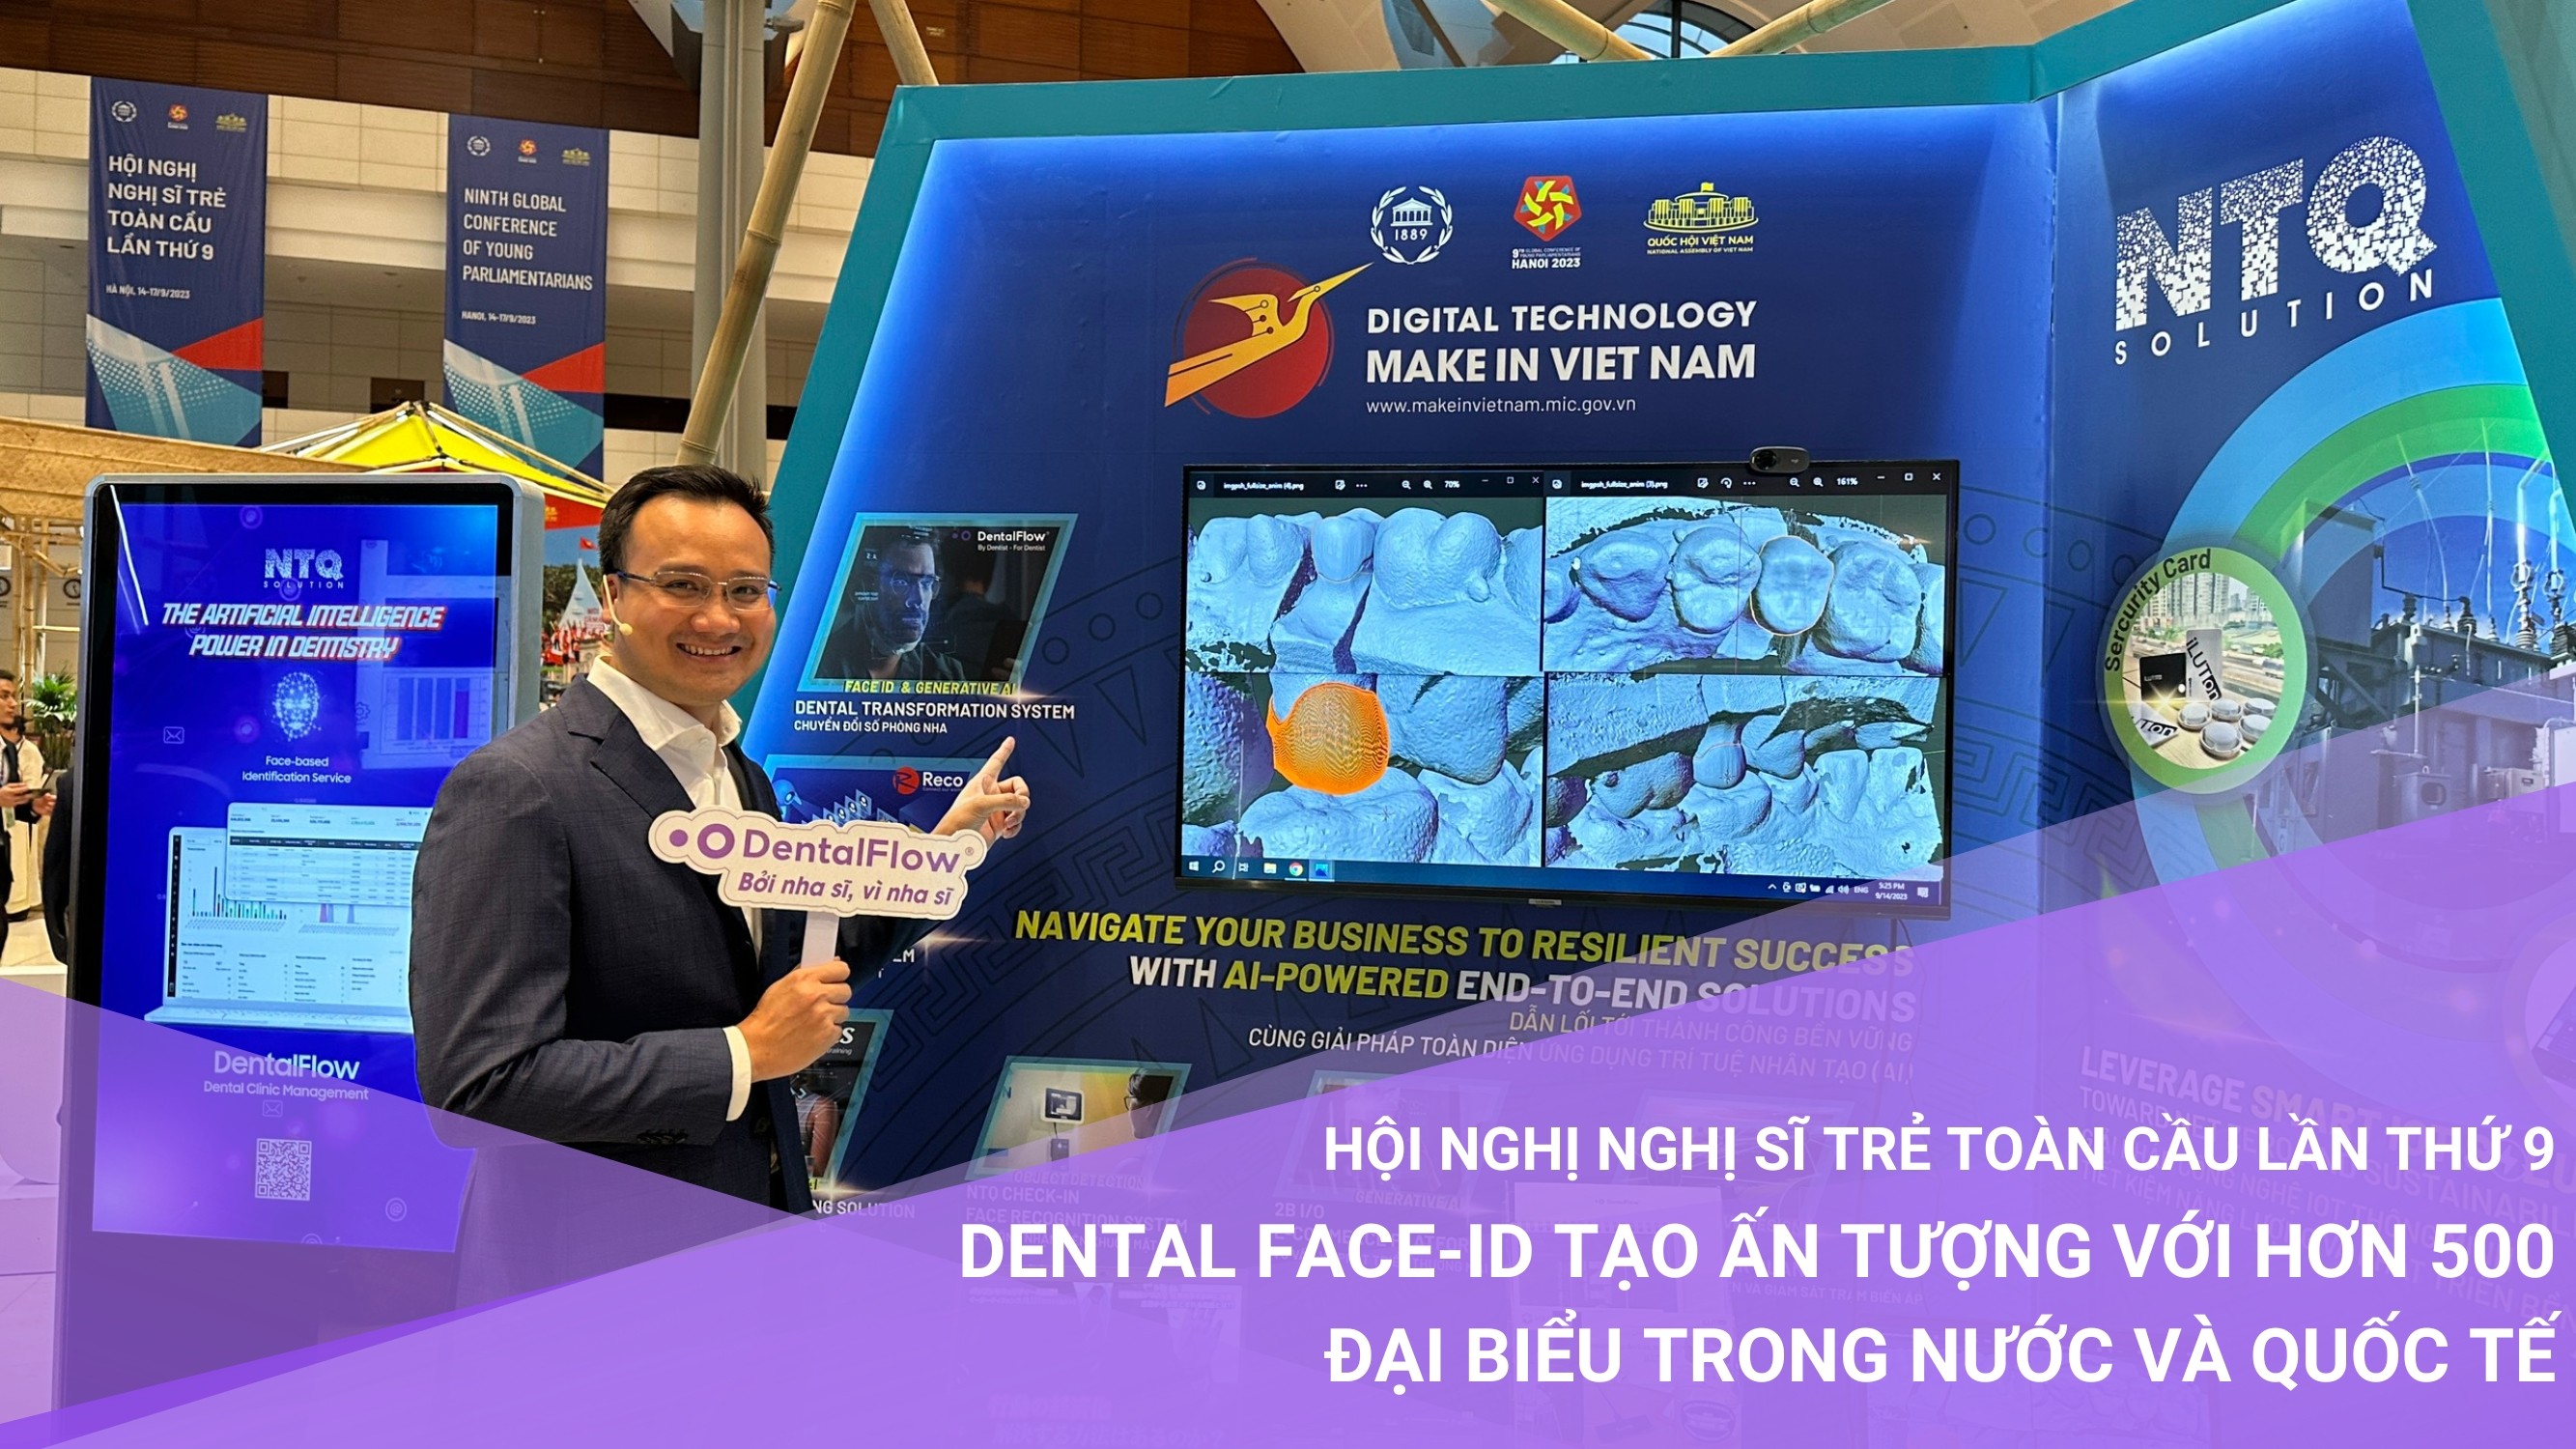 Hội nghị nghị sĩ trẻ toàn cầu lần thứ 9: Dental Face-ID tạo ấn tượng với hơn 500 đại biểu trong nước và quốc tế